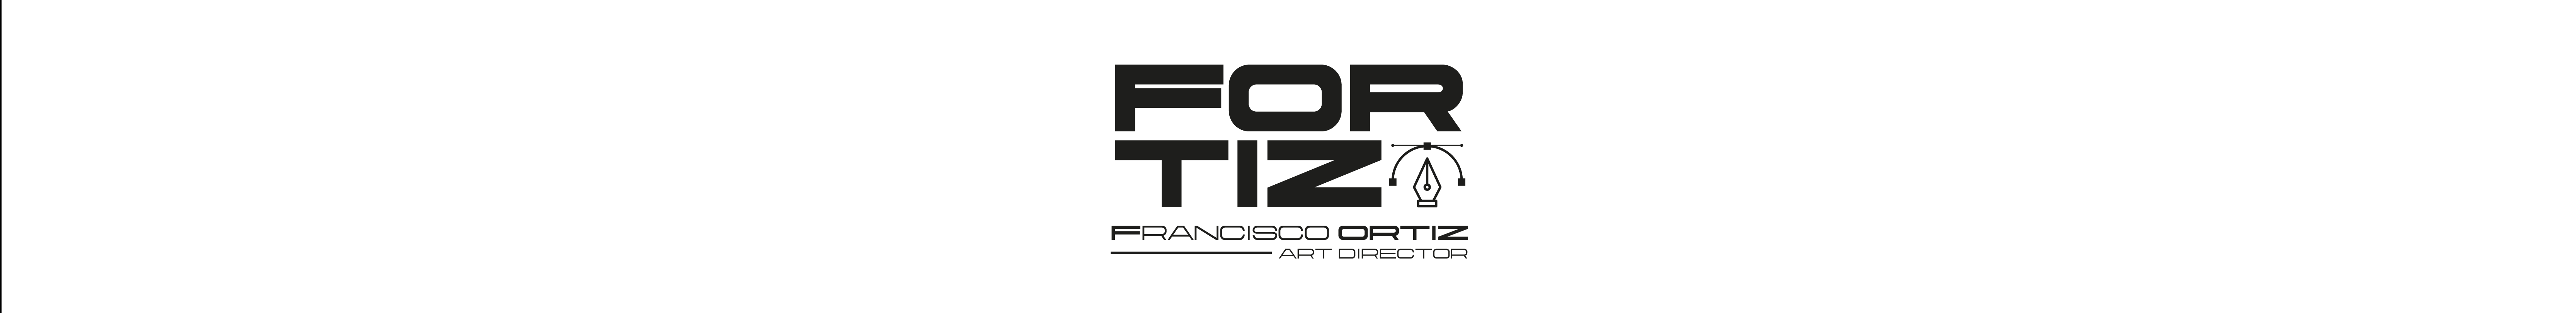 Francisco Ortiz's profile banner